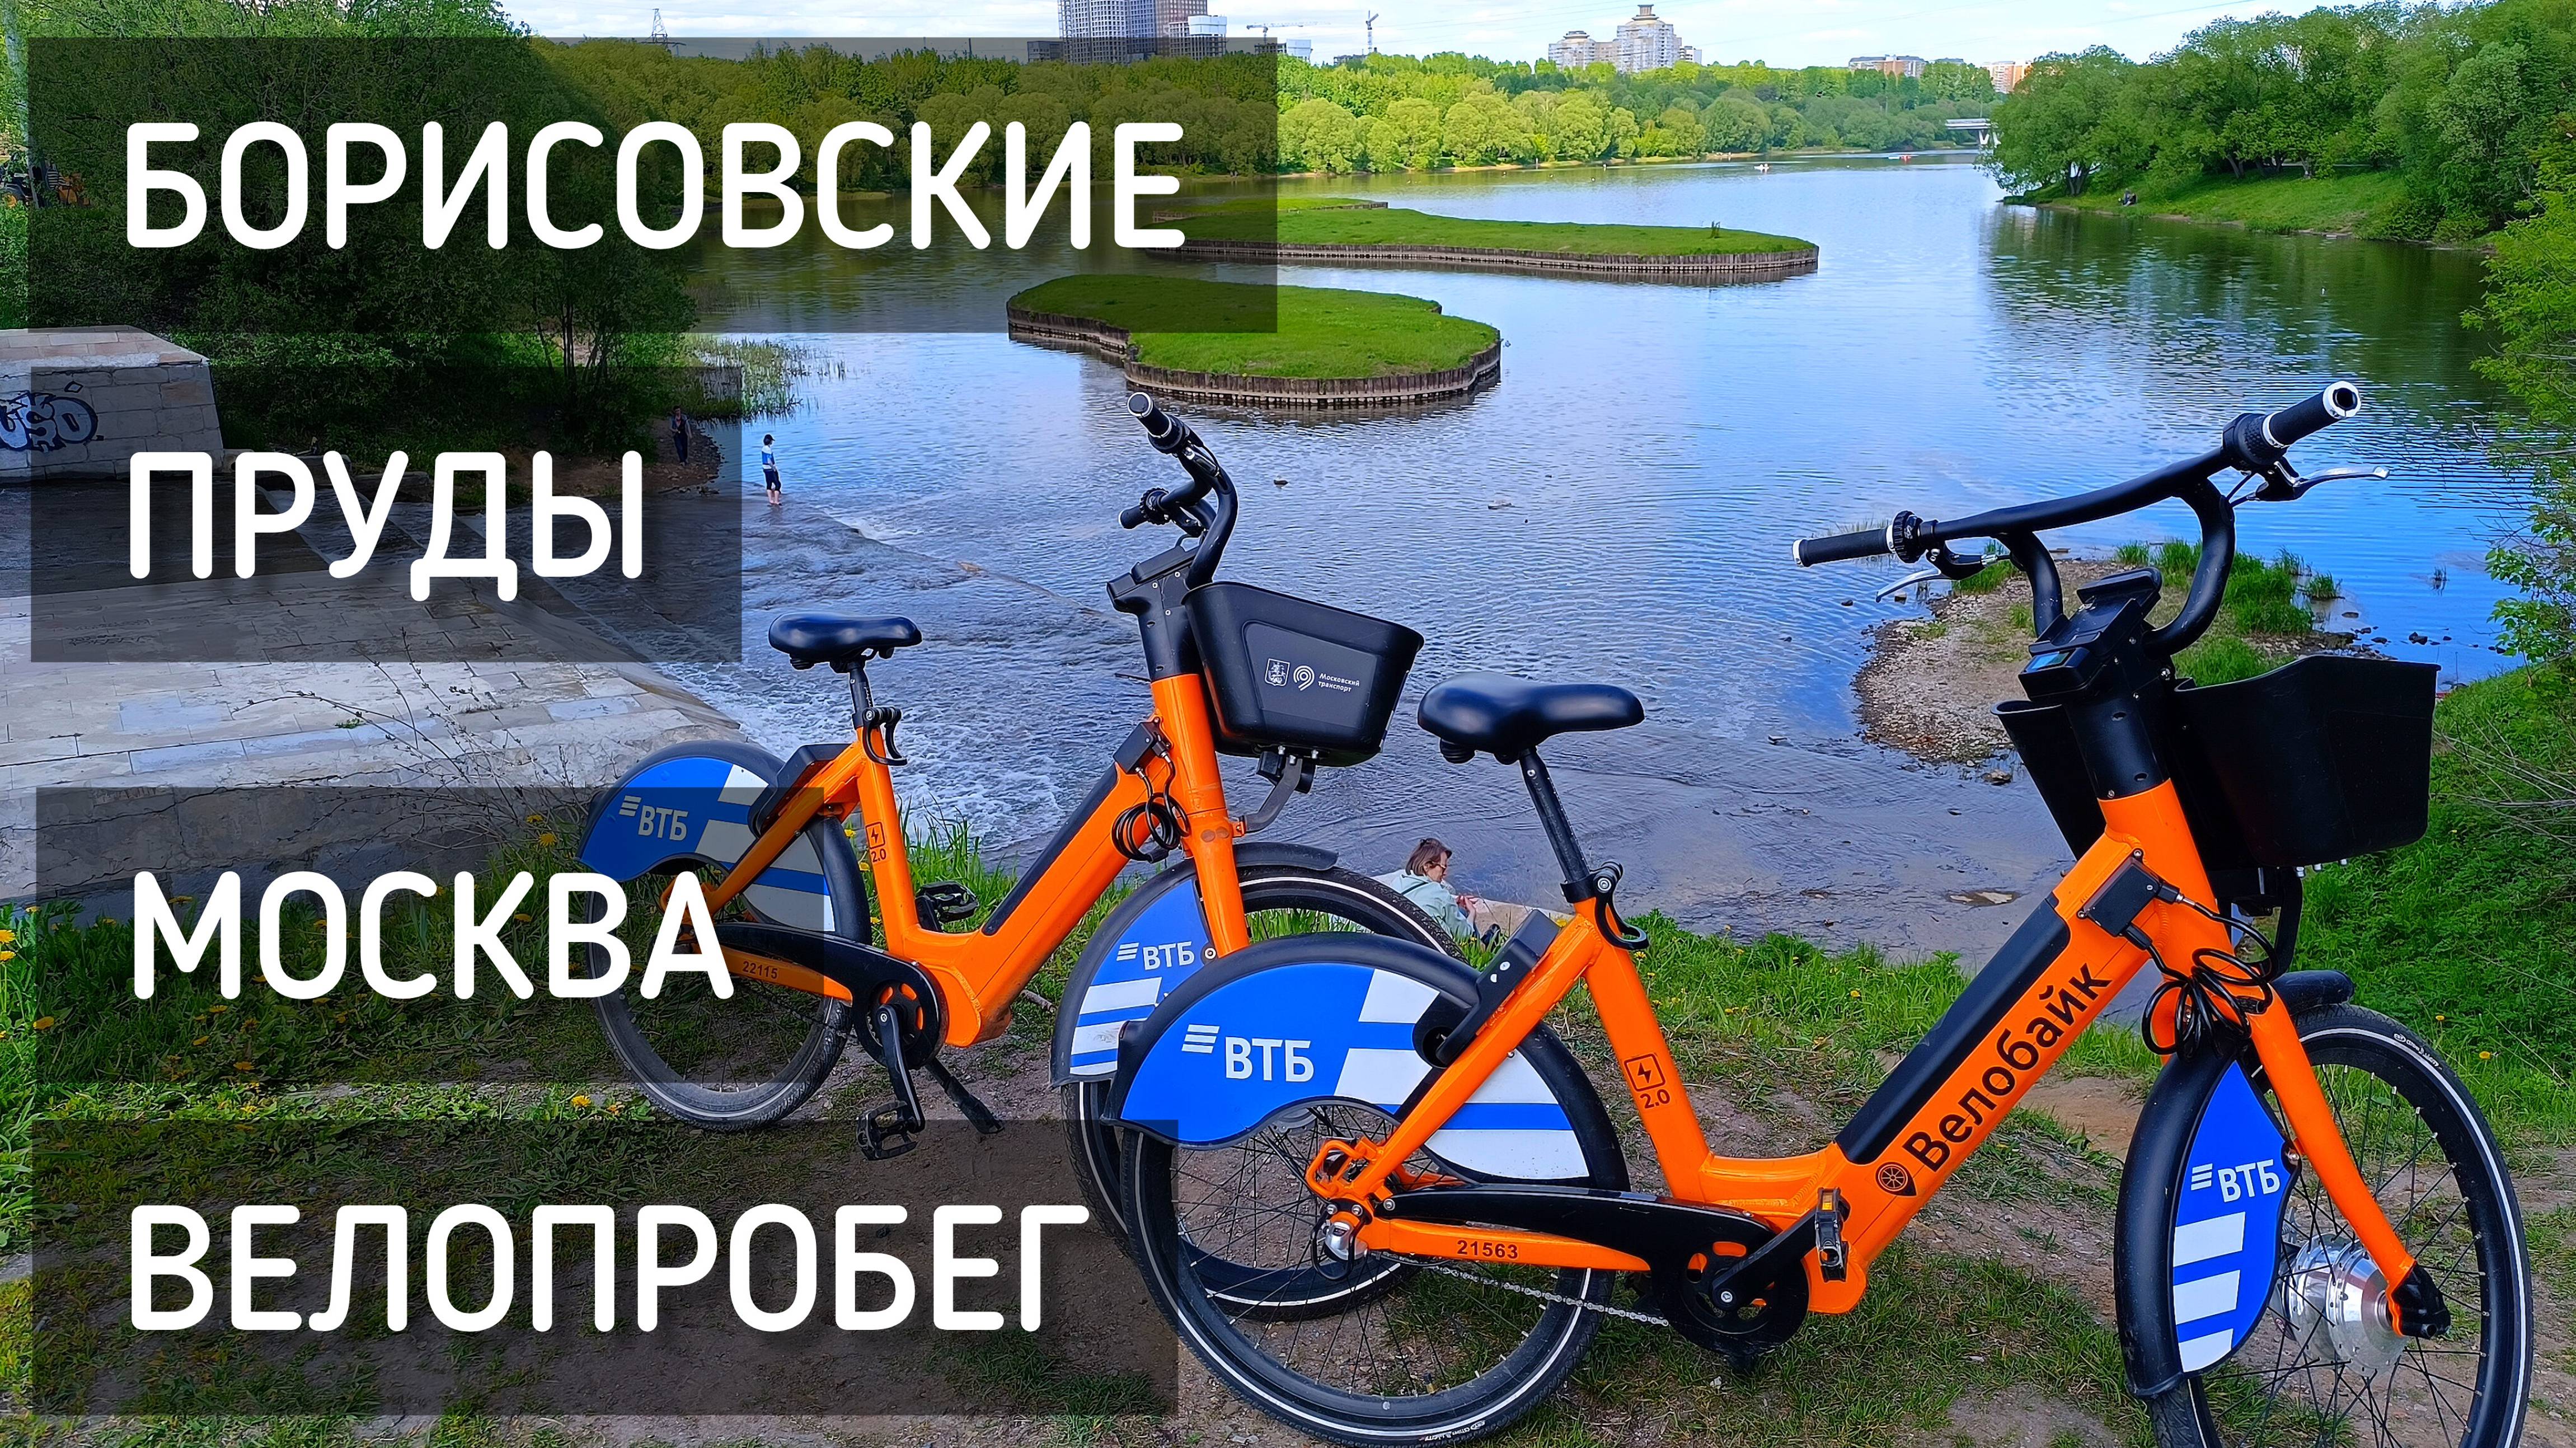 Москва. Велопробег. Борисовские пруды. Велосипеды на прокат / Bike ride #москва #велопробег #спорт